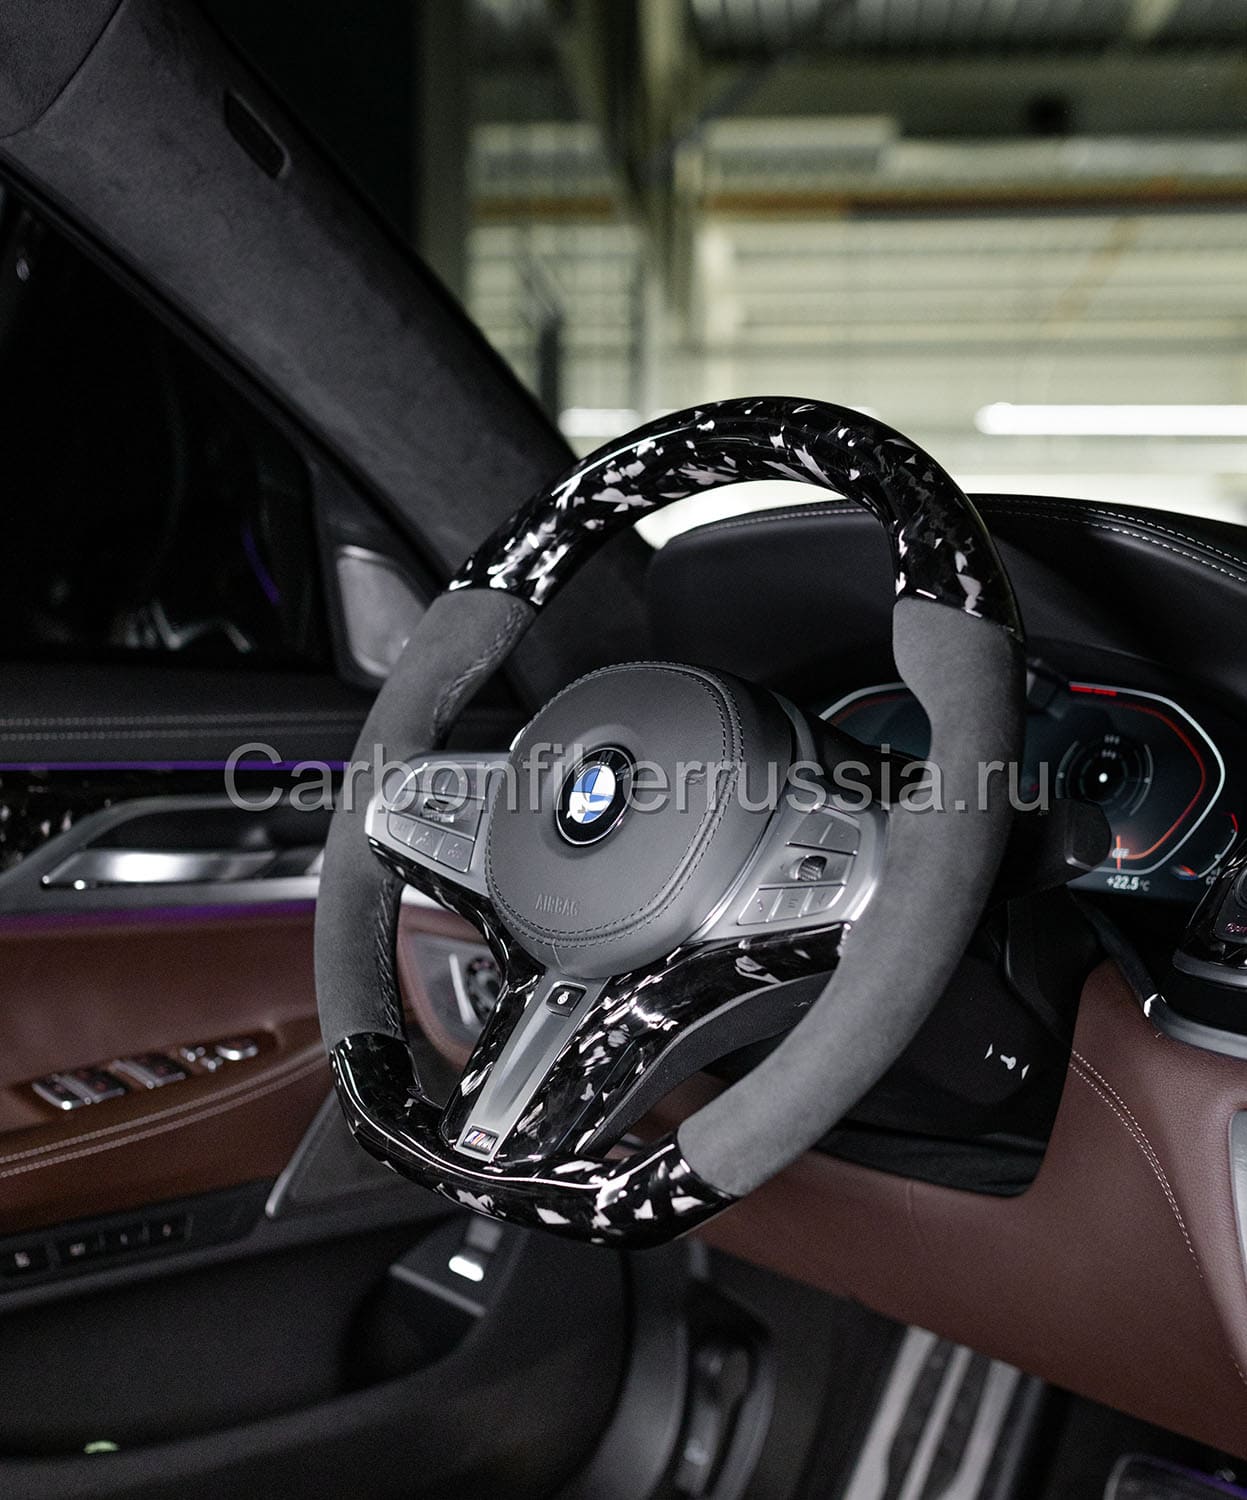 Карбоновый руль для BMW | CarbonFiberRussia